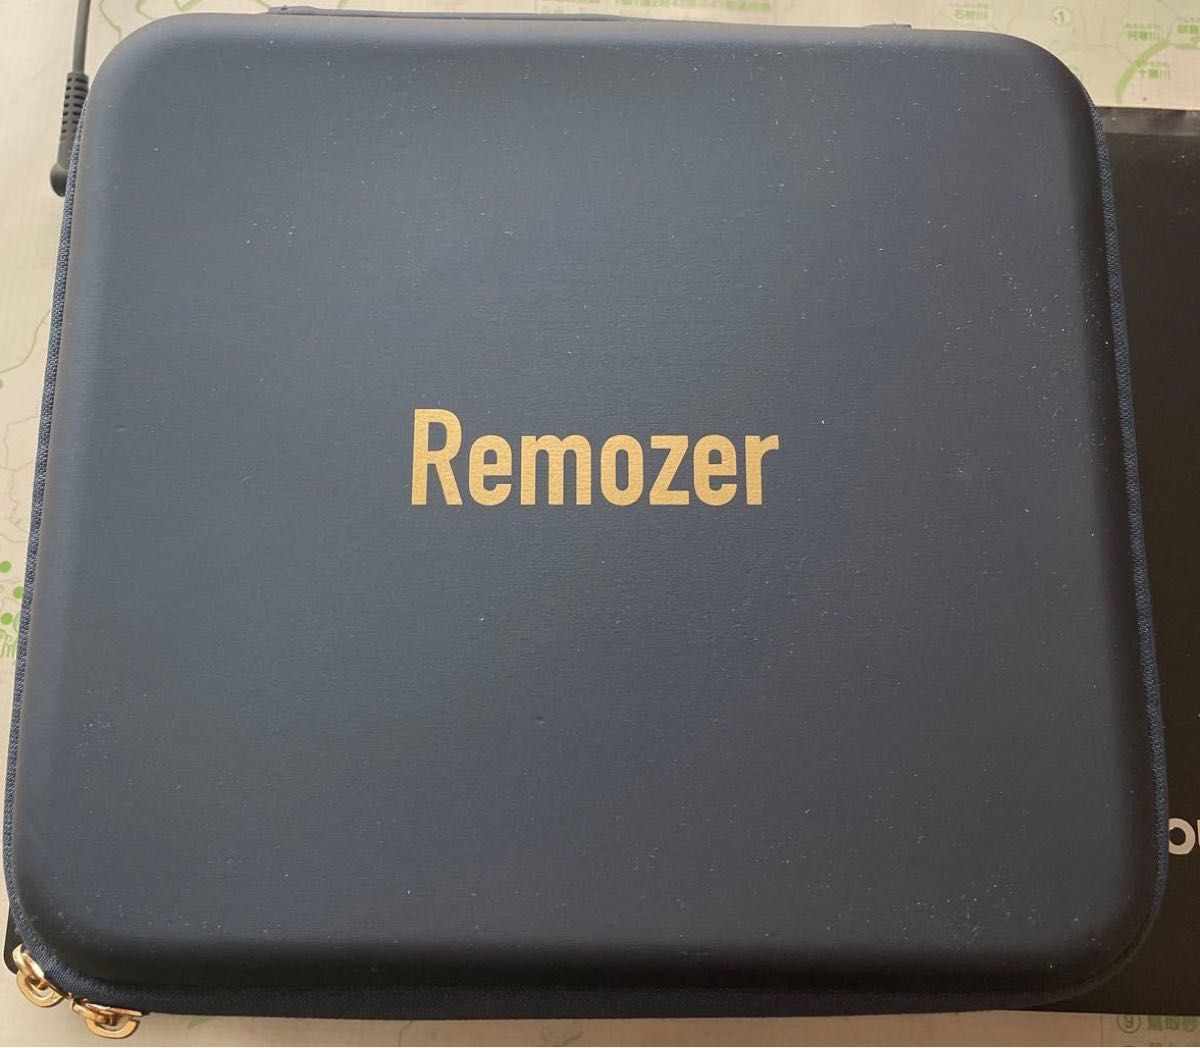  リムーザー Remozer 2 Pro 家庭用脱毛器 メンズ 髭 vio対応  冷却 レディース  アタッチメント付き 